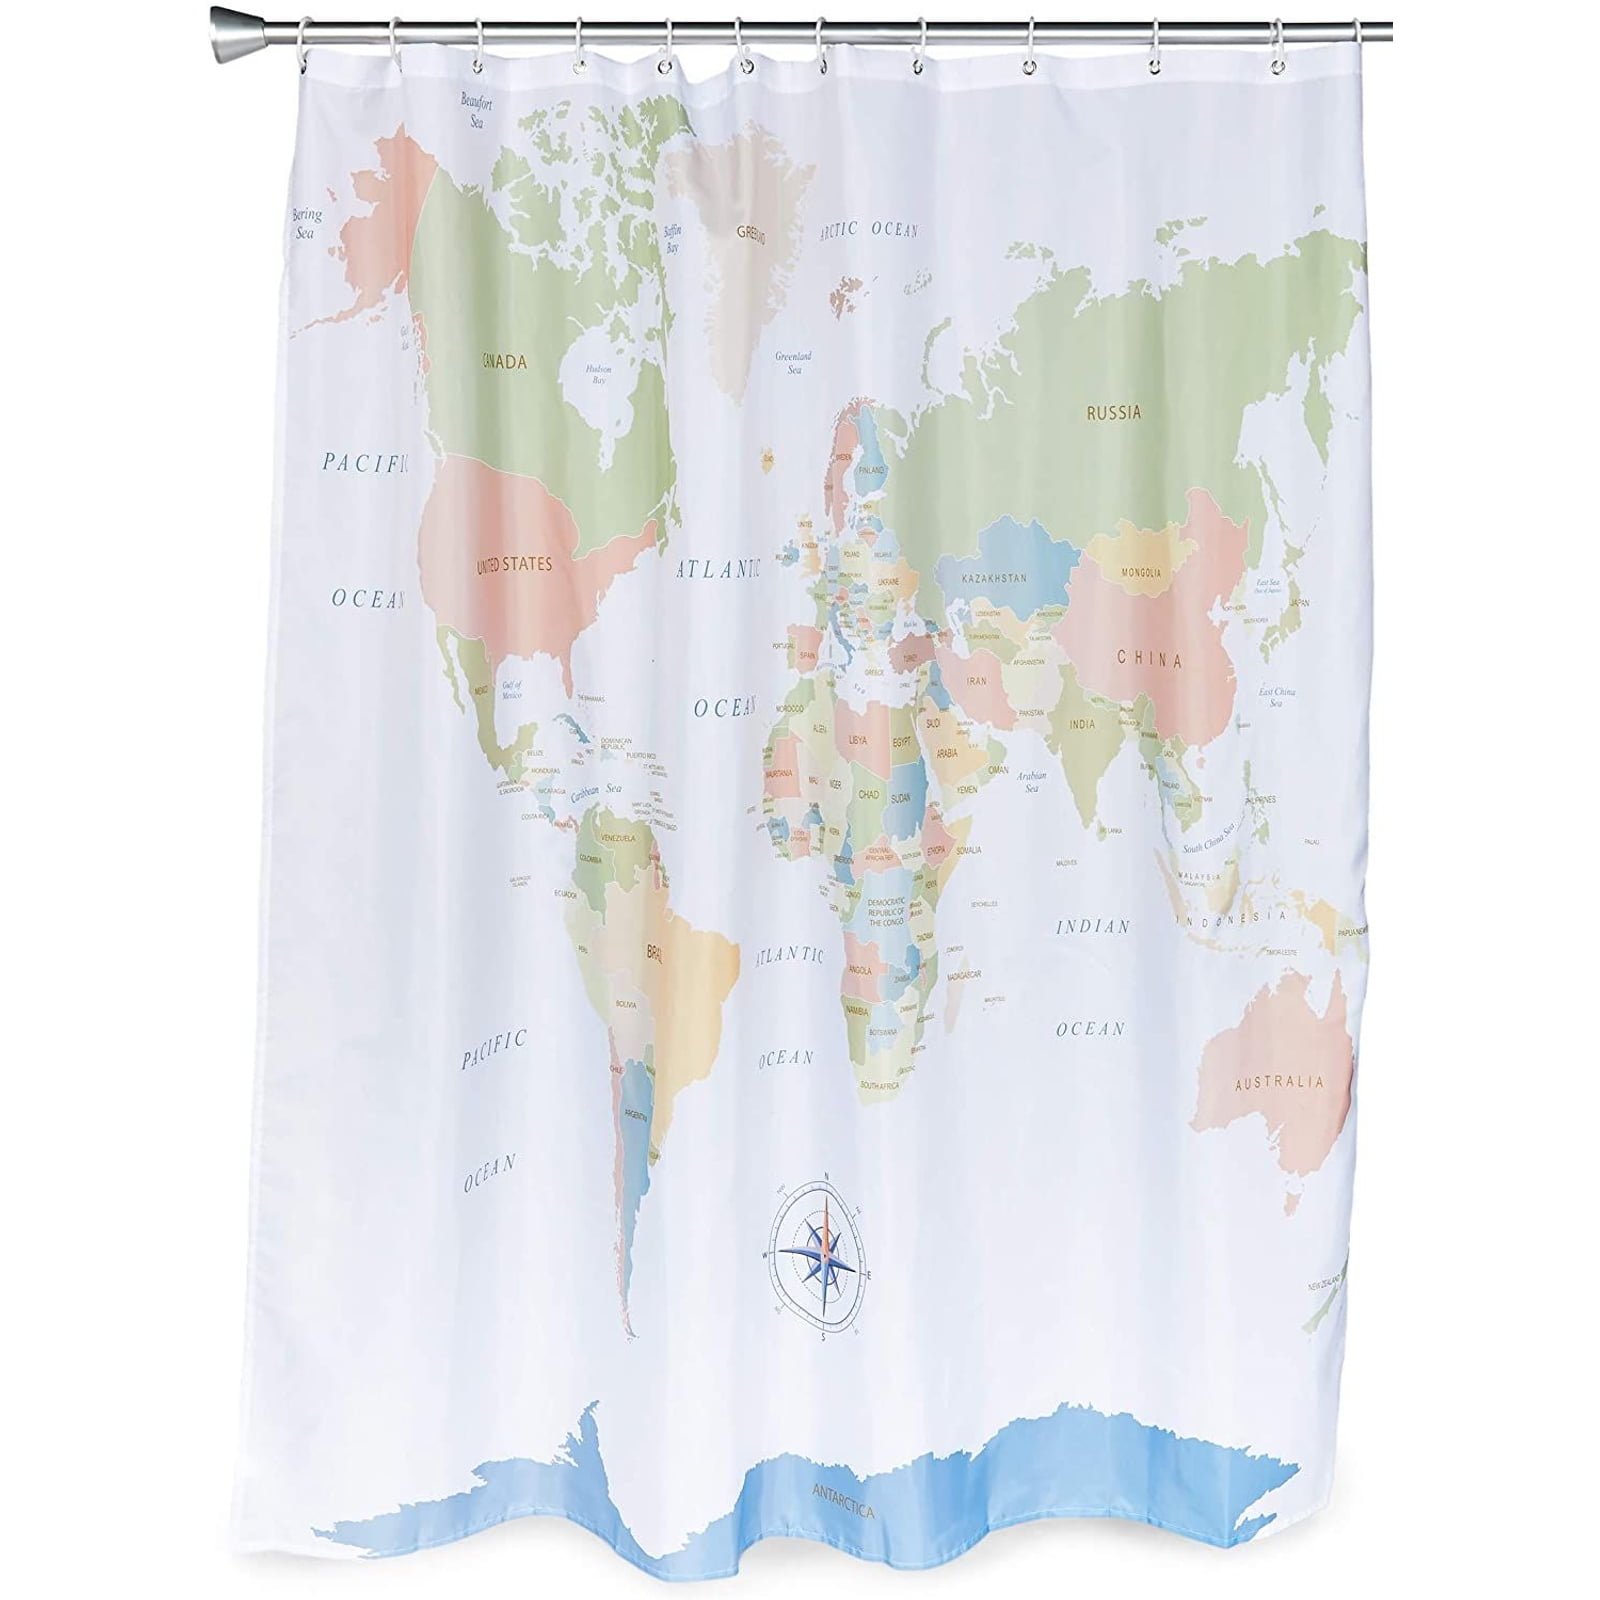 Watermelon Bathroom Decor Shower Curtain Waterproof Fabric w/12 Hooks 71*71in 